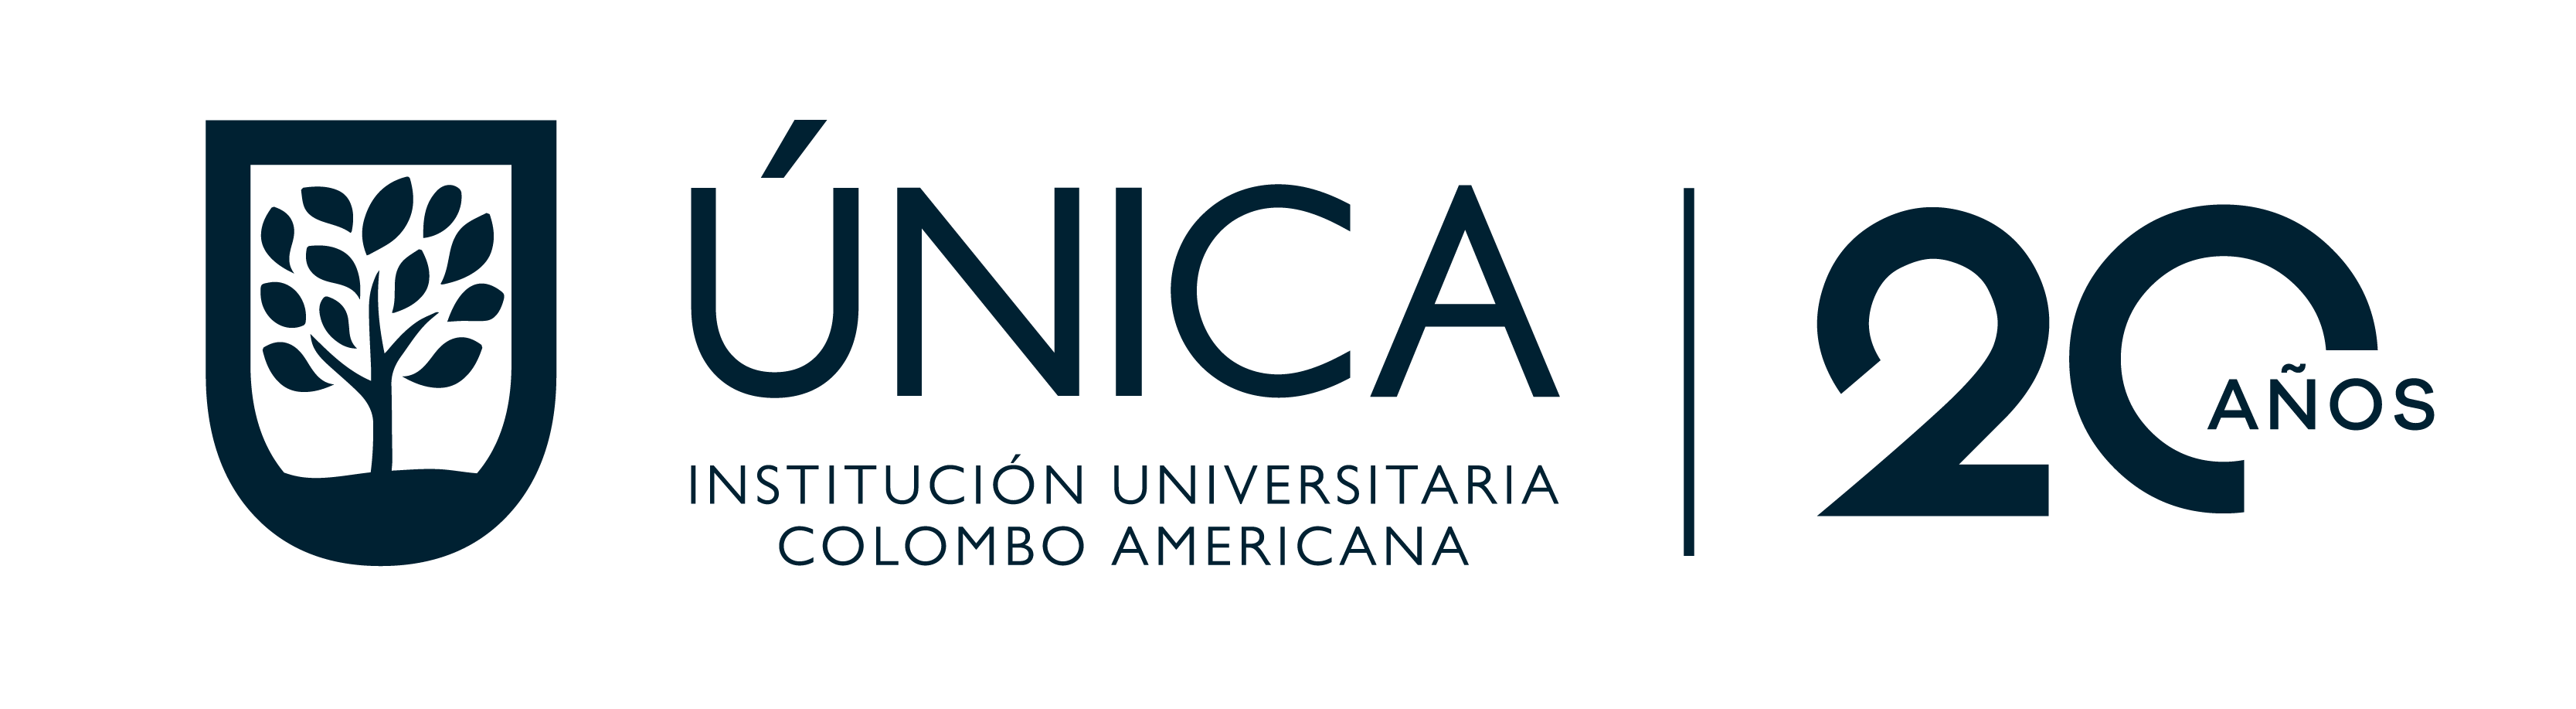 المعهد الجامعي الكولومبي الأمريكي: ÚNICA